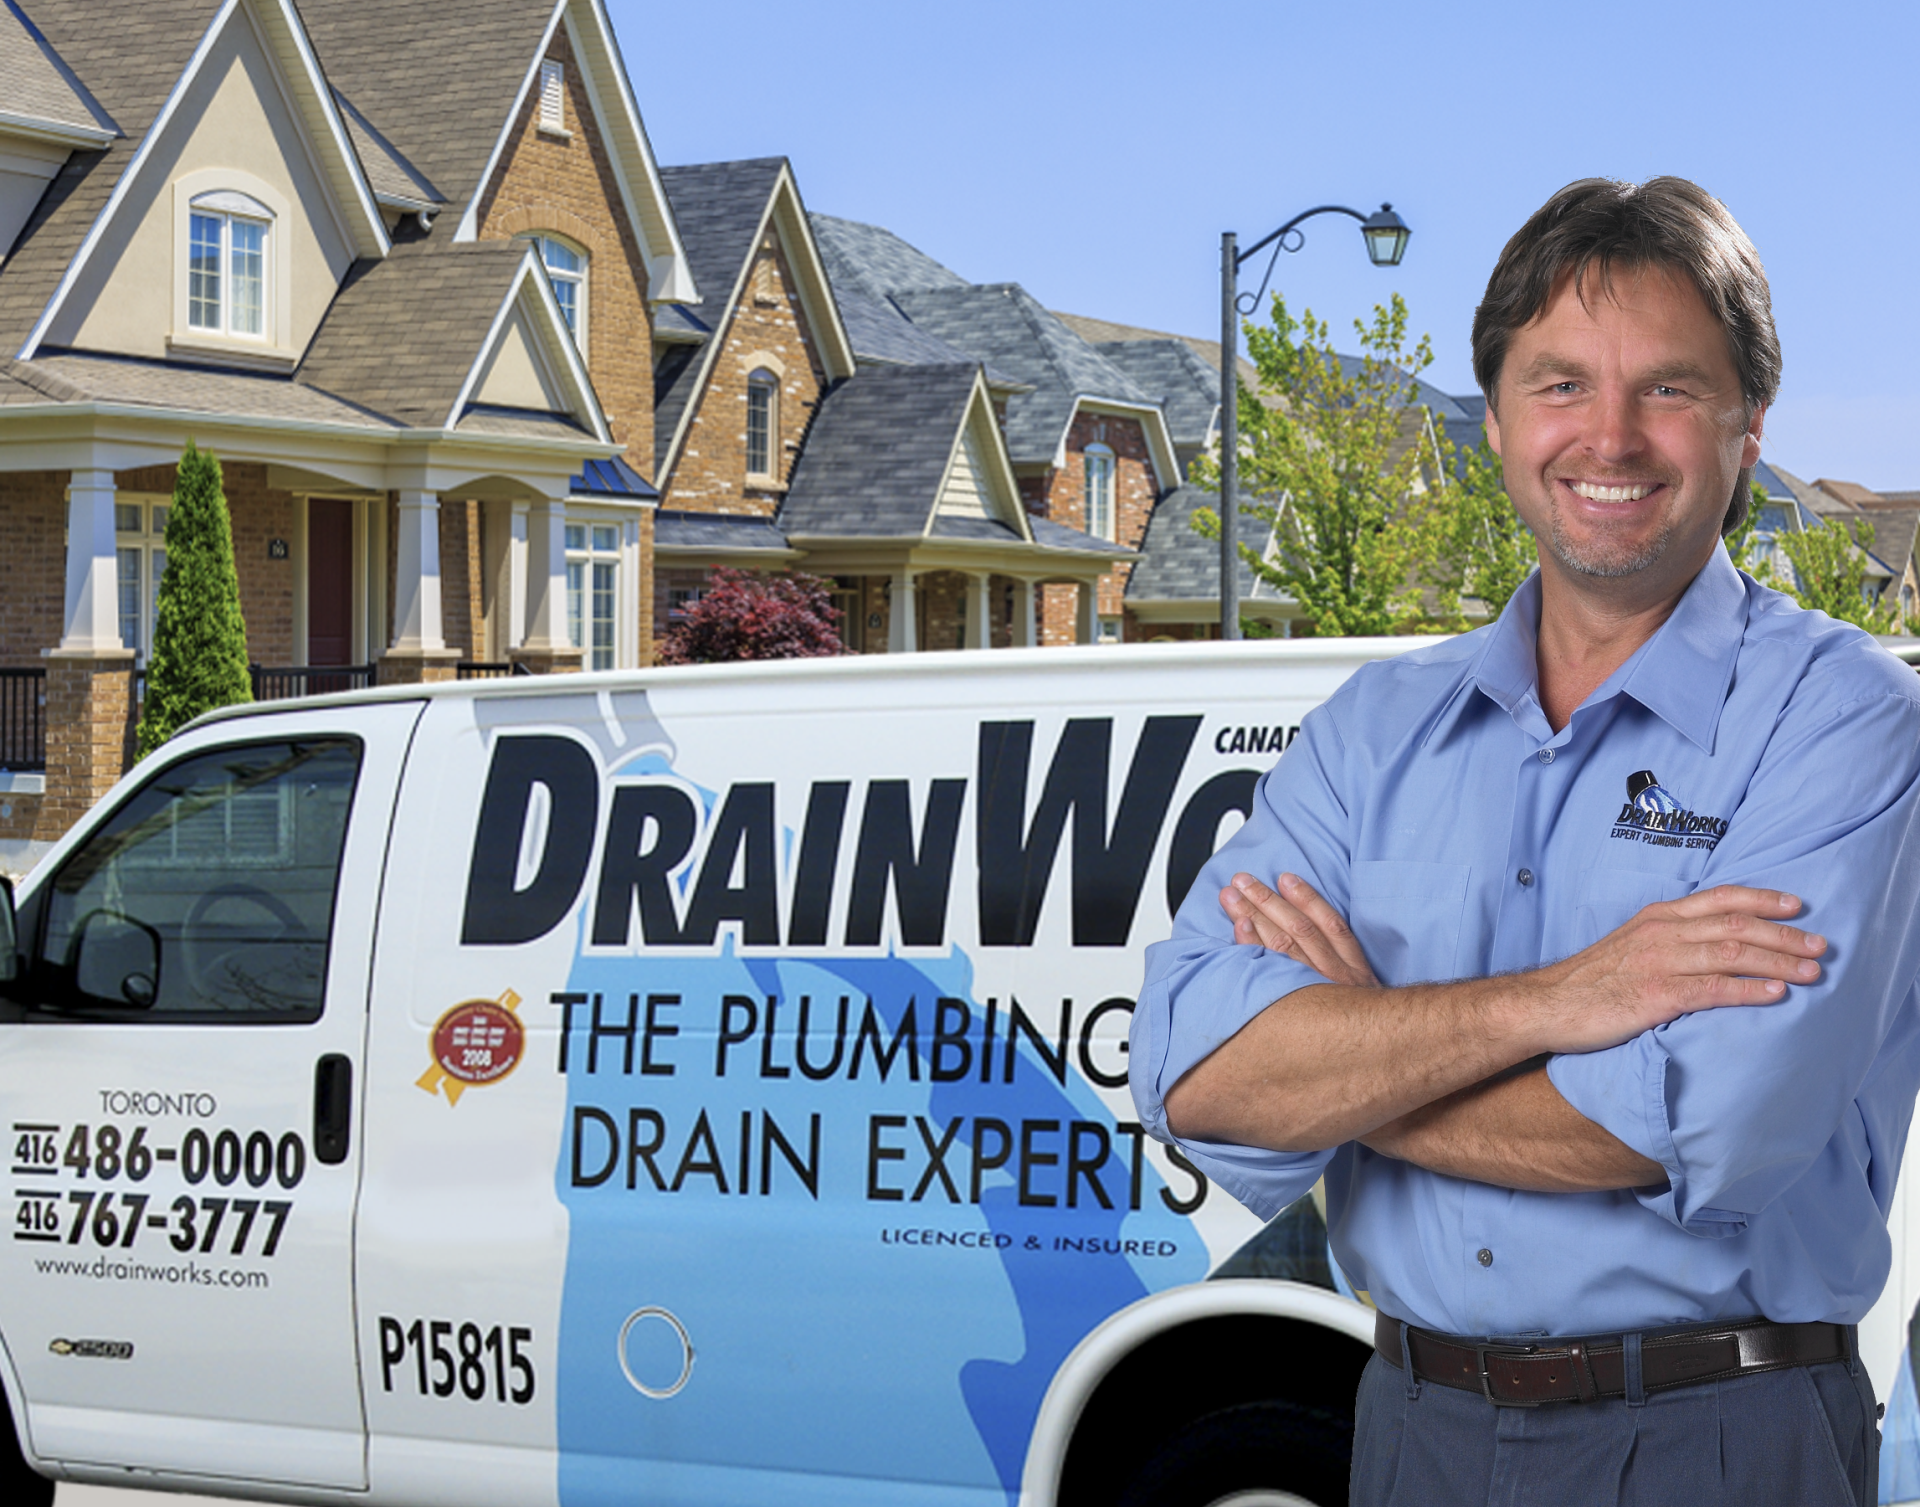 drainworks plumbing toronto terry crossed arms